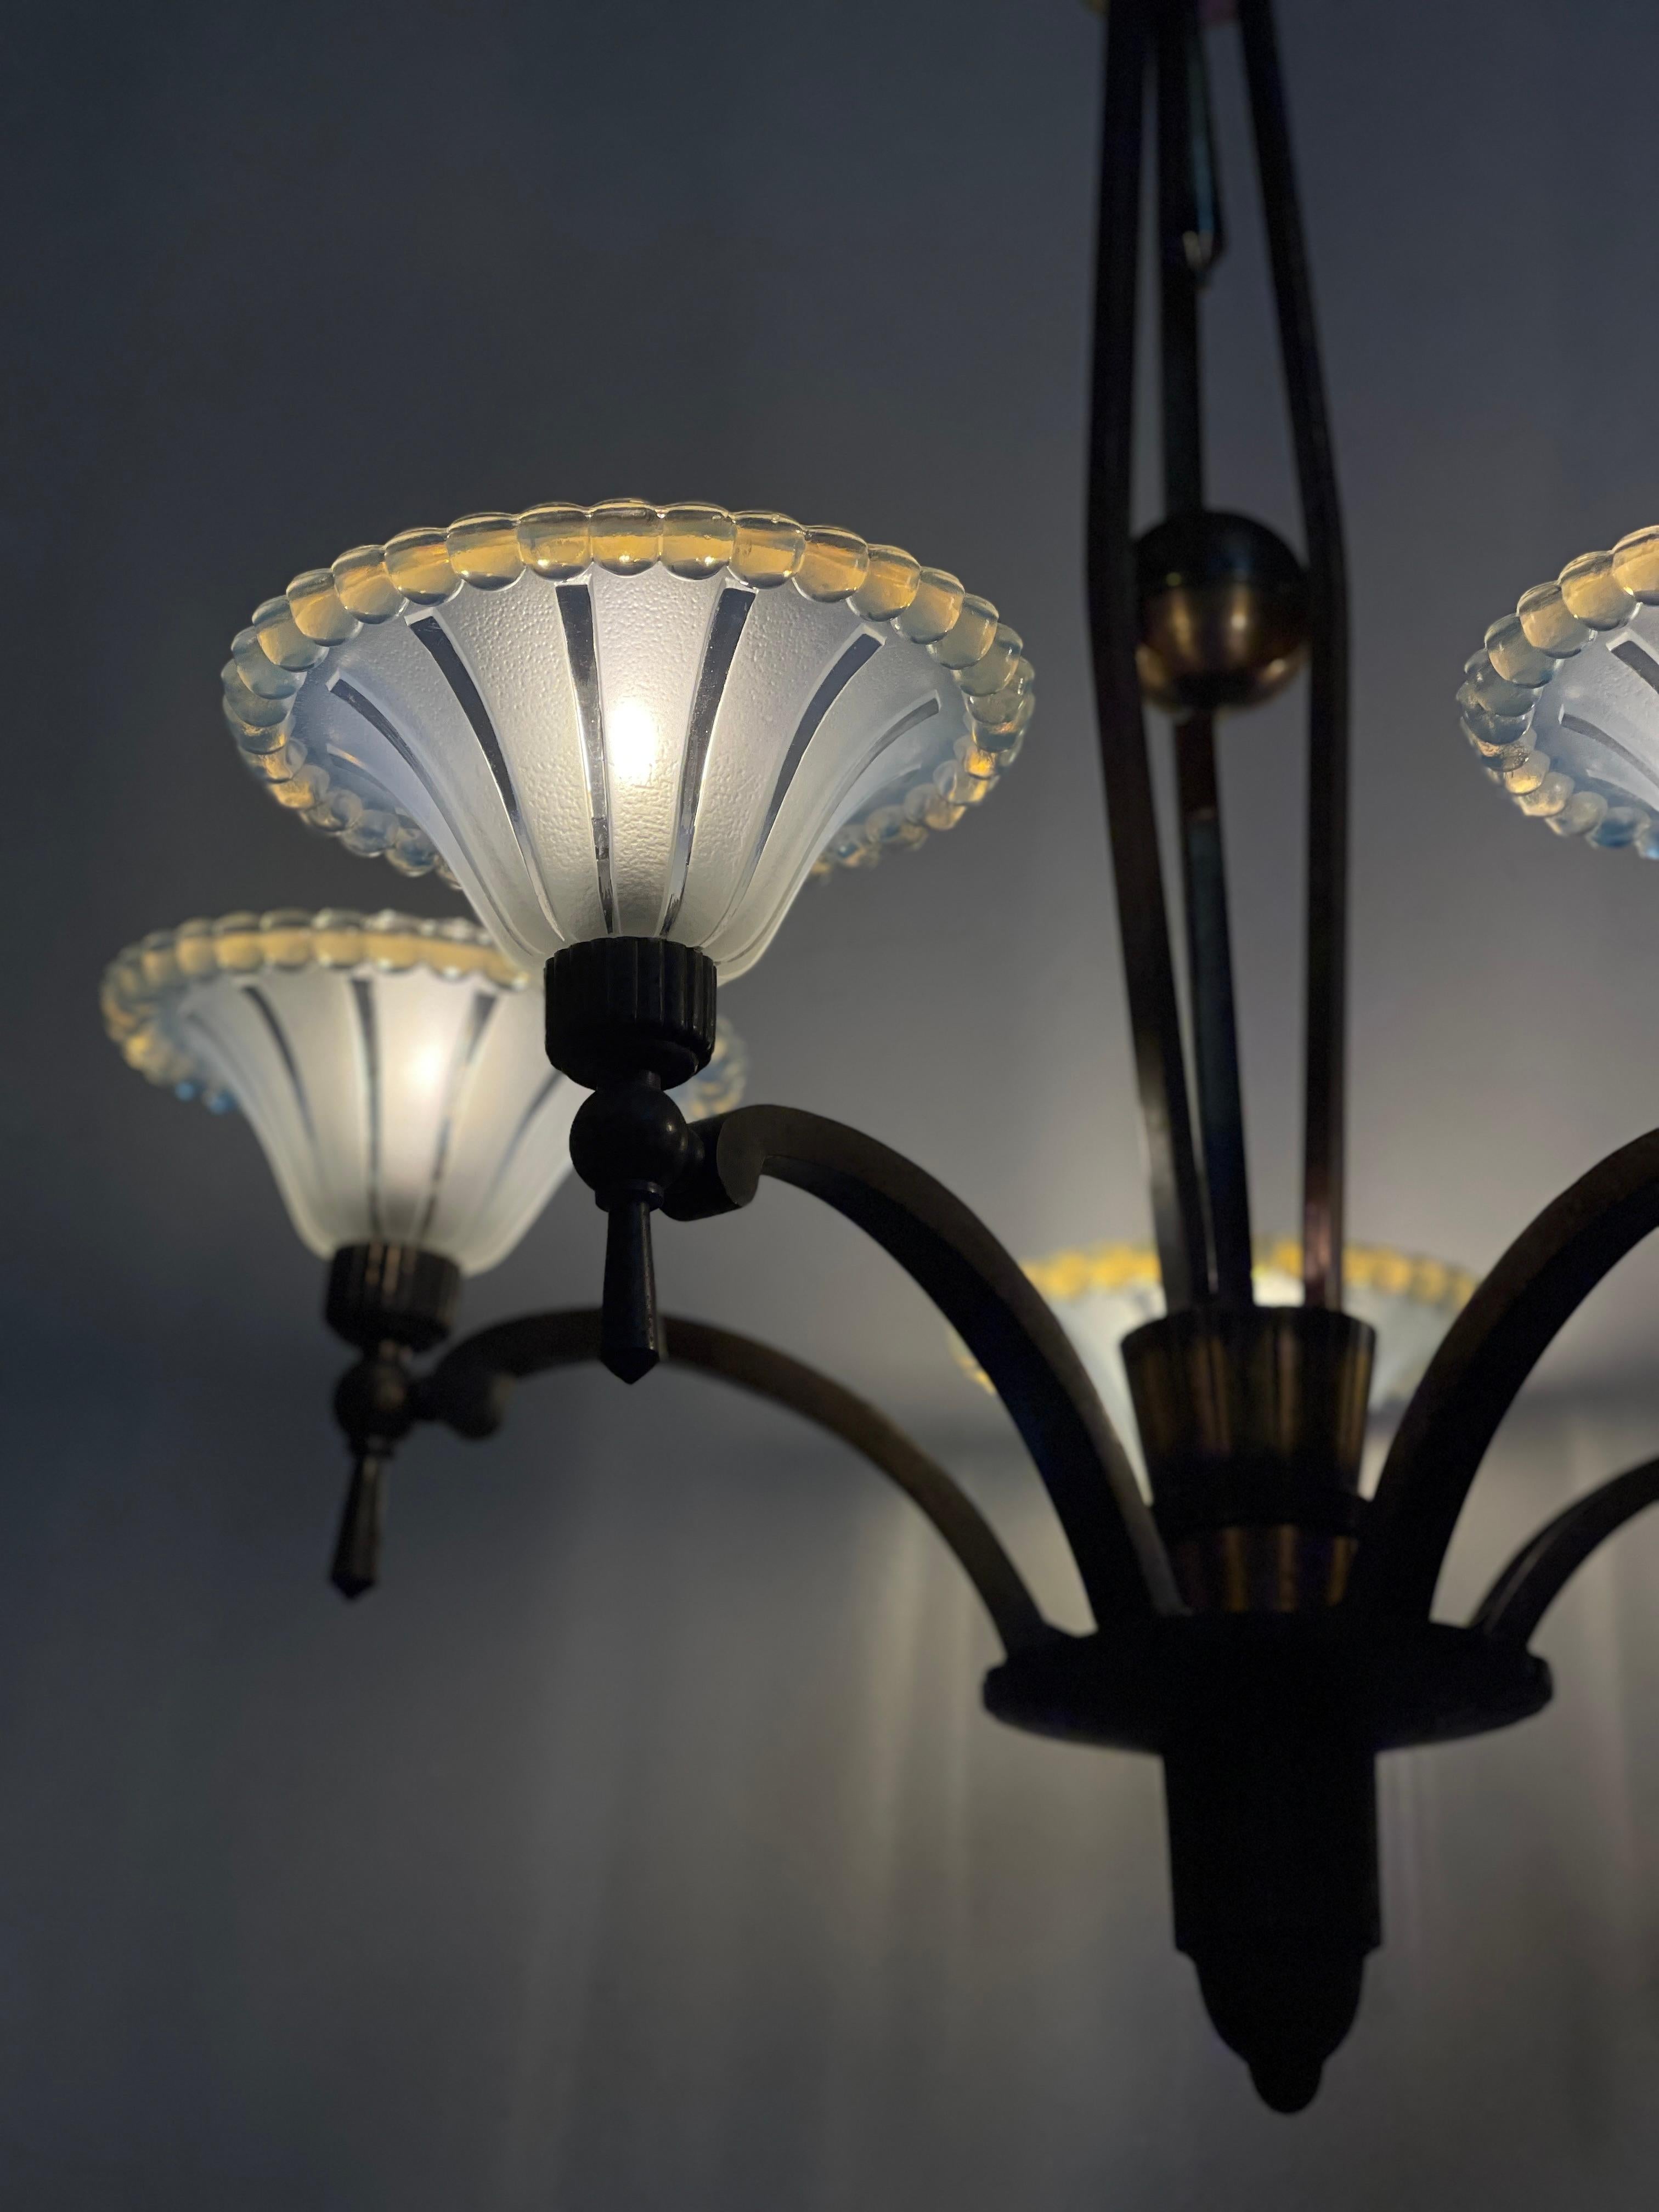 Antique French Art Deco Petitot & Ezan Glass Ceiling Pendant Chandelier Light 1